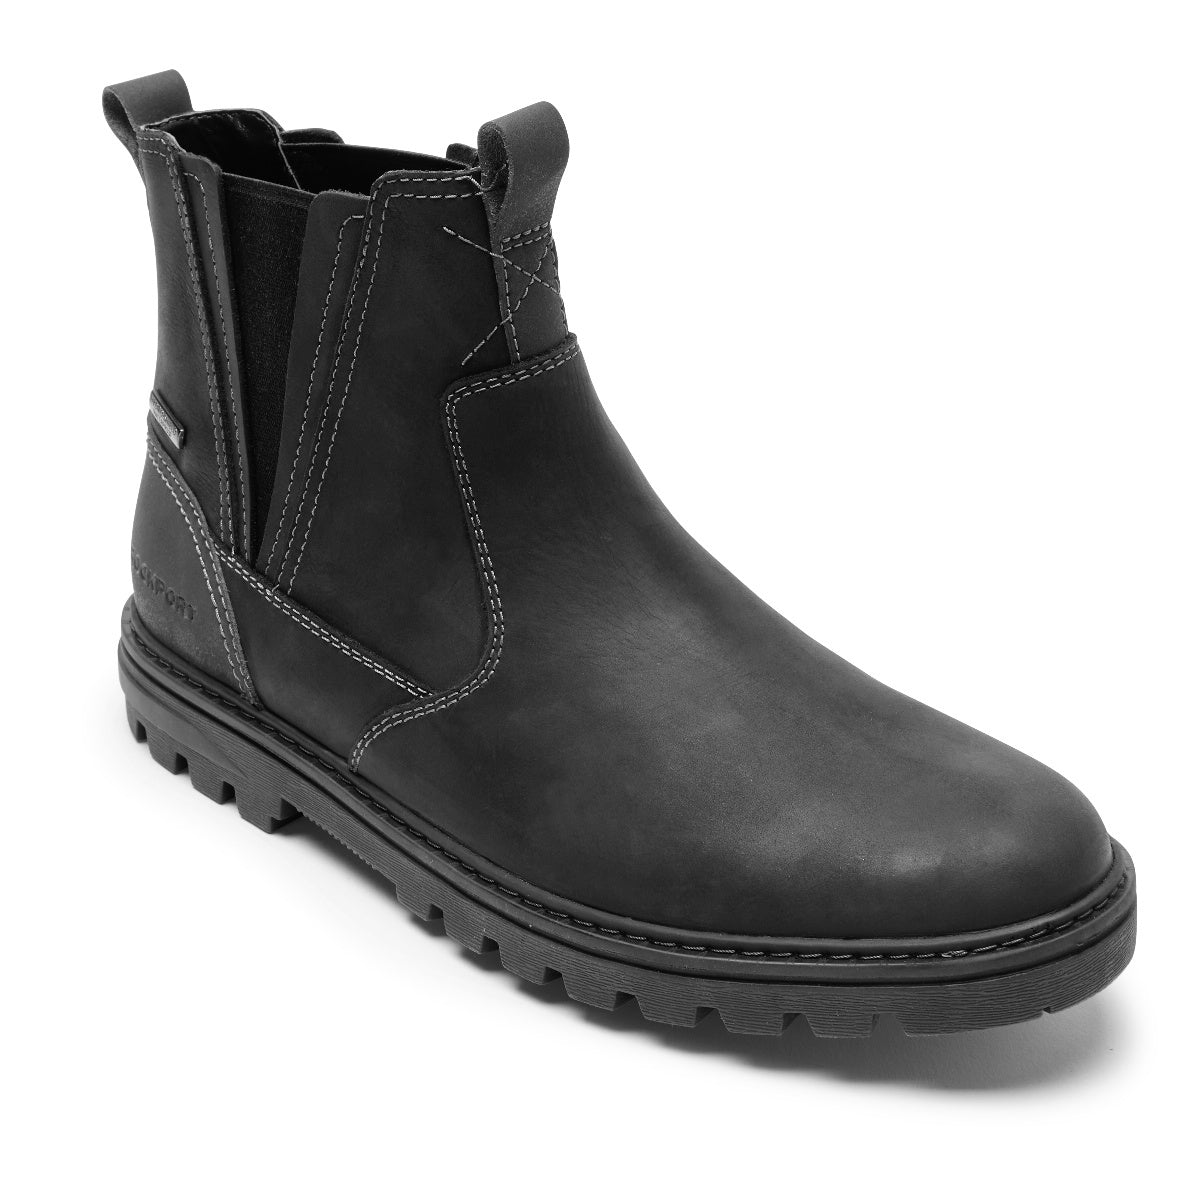 Men's Weather or Not Waterproof Chelsea Boots | Rockport